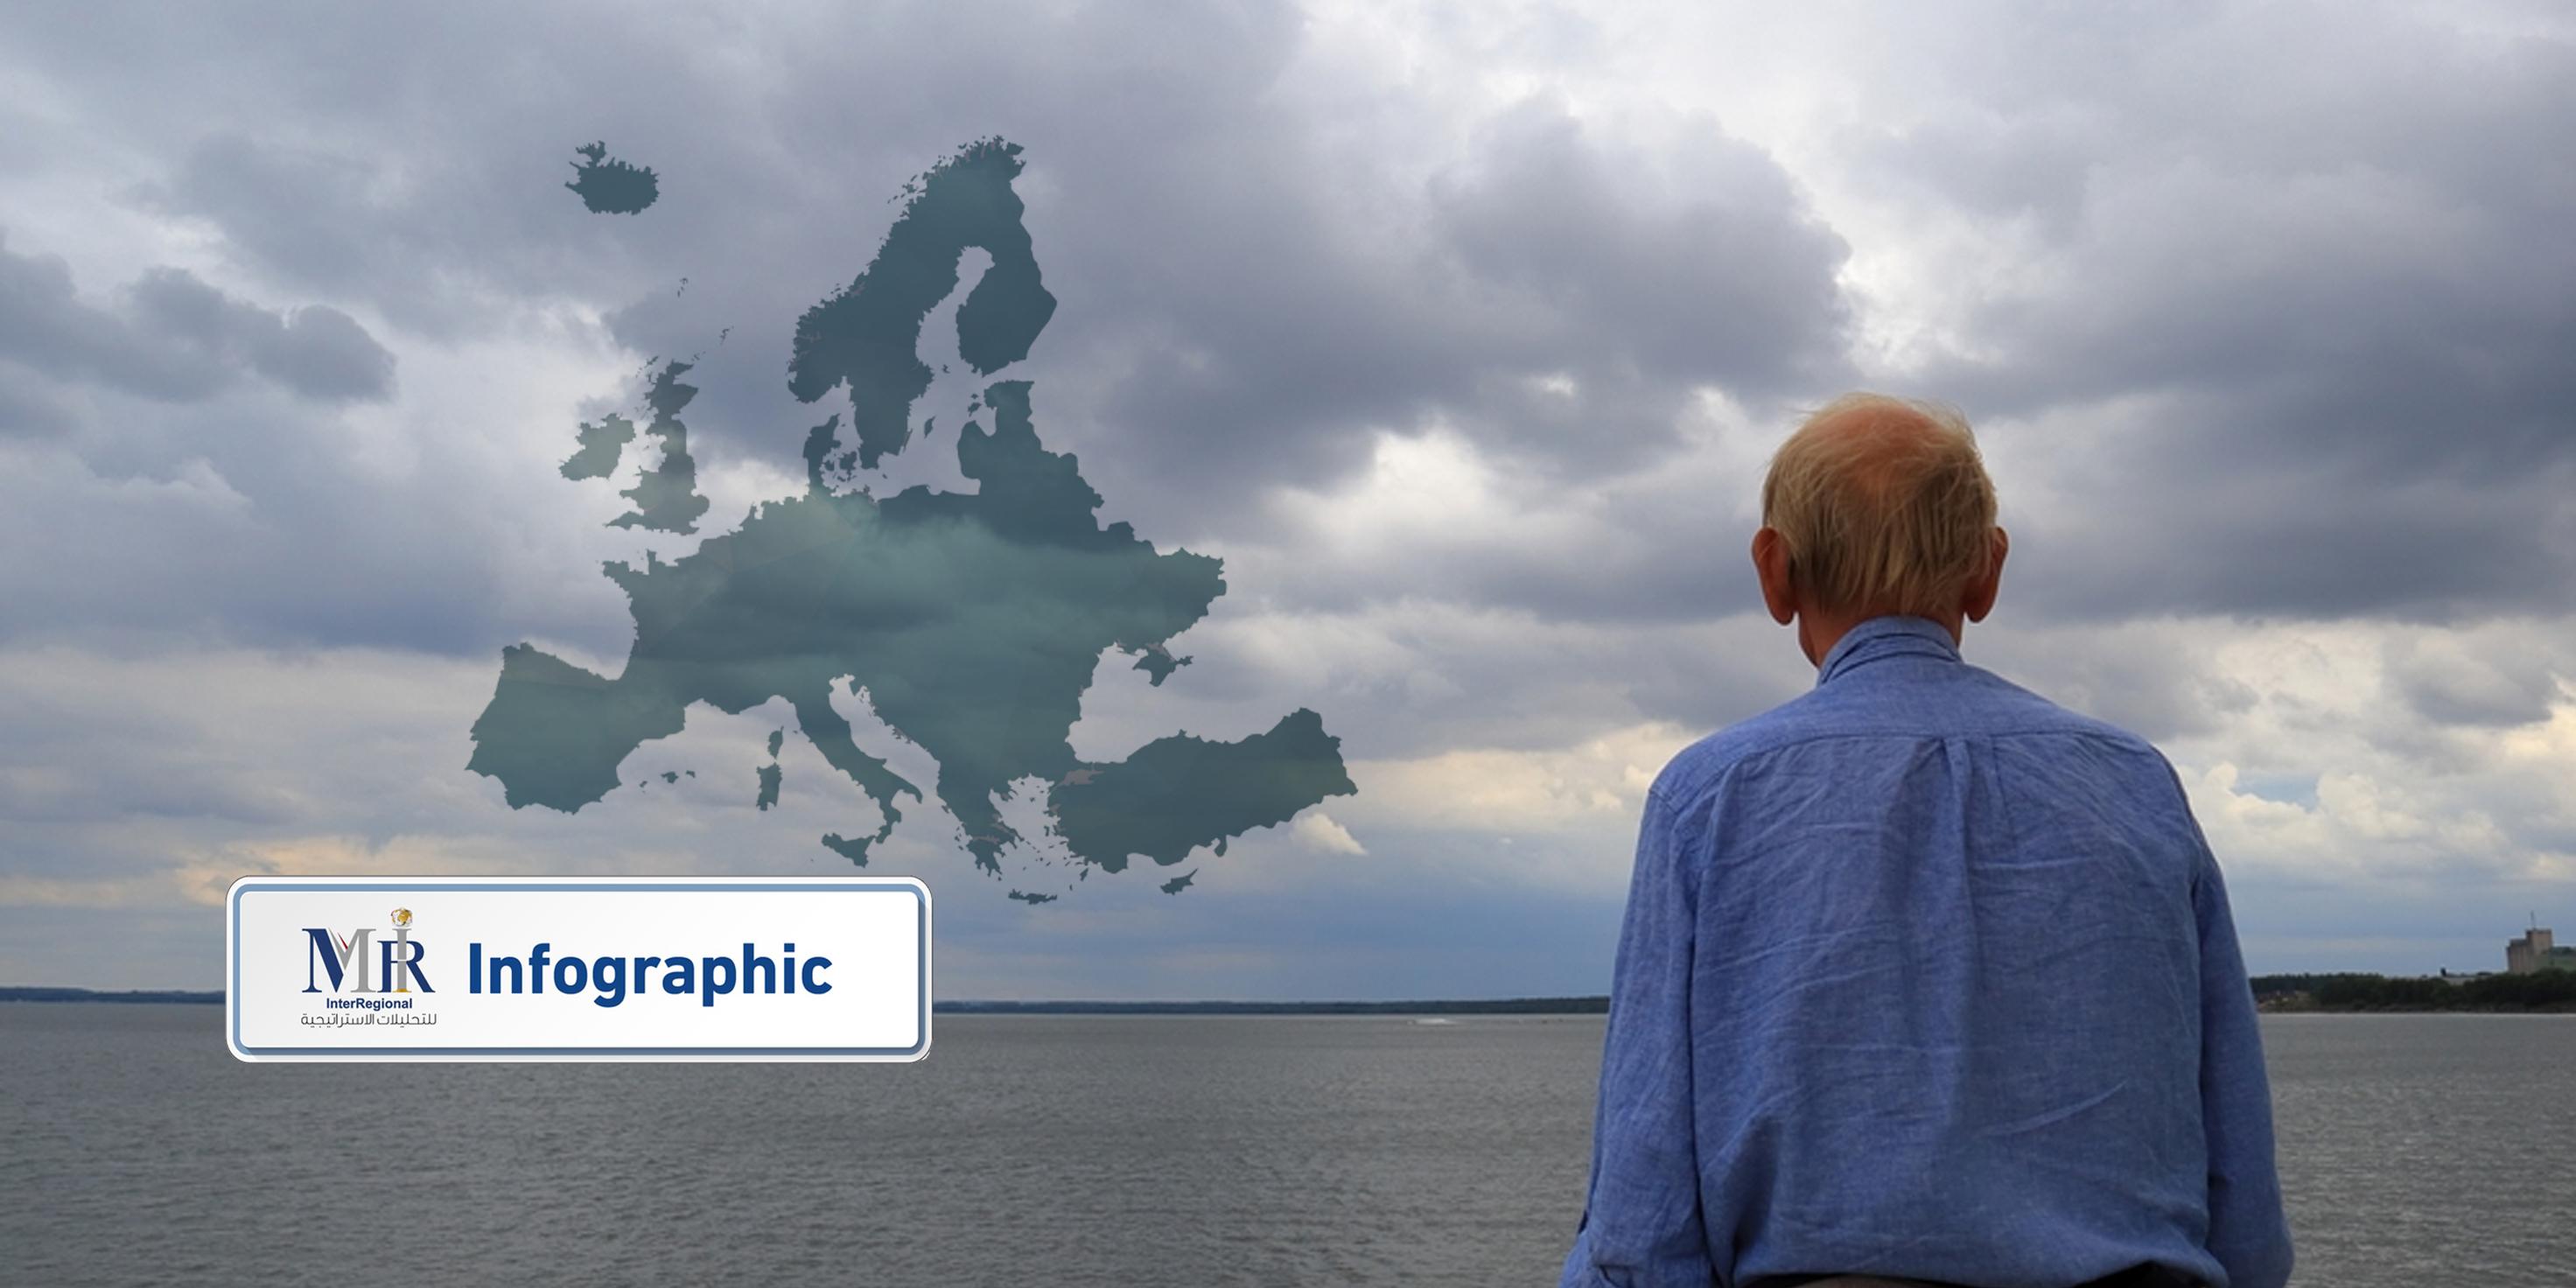 ملامح أزمة أوروبا الديموغرافية خلال السنوات العشر القادمة (إنفوجرافيك)